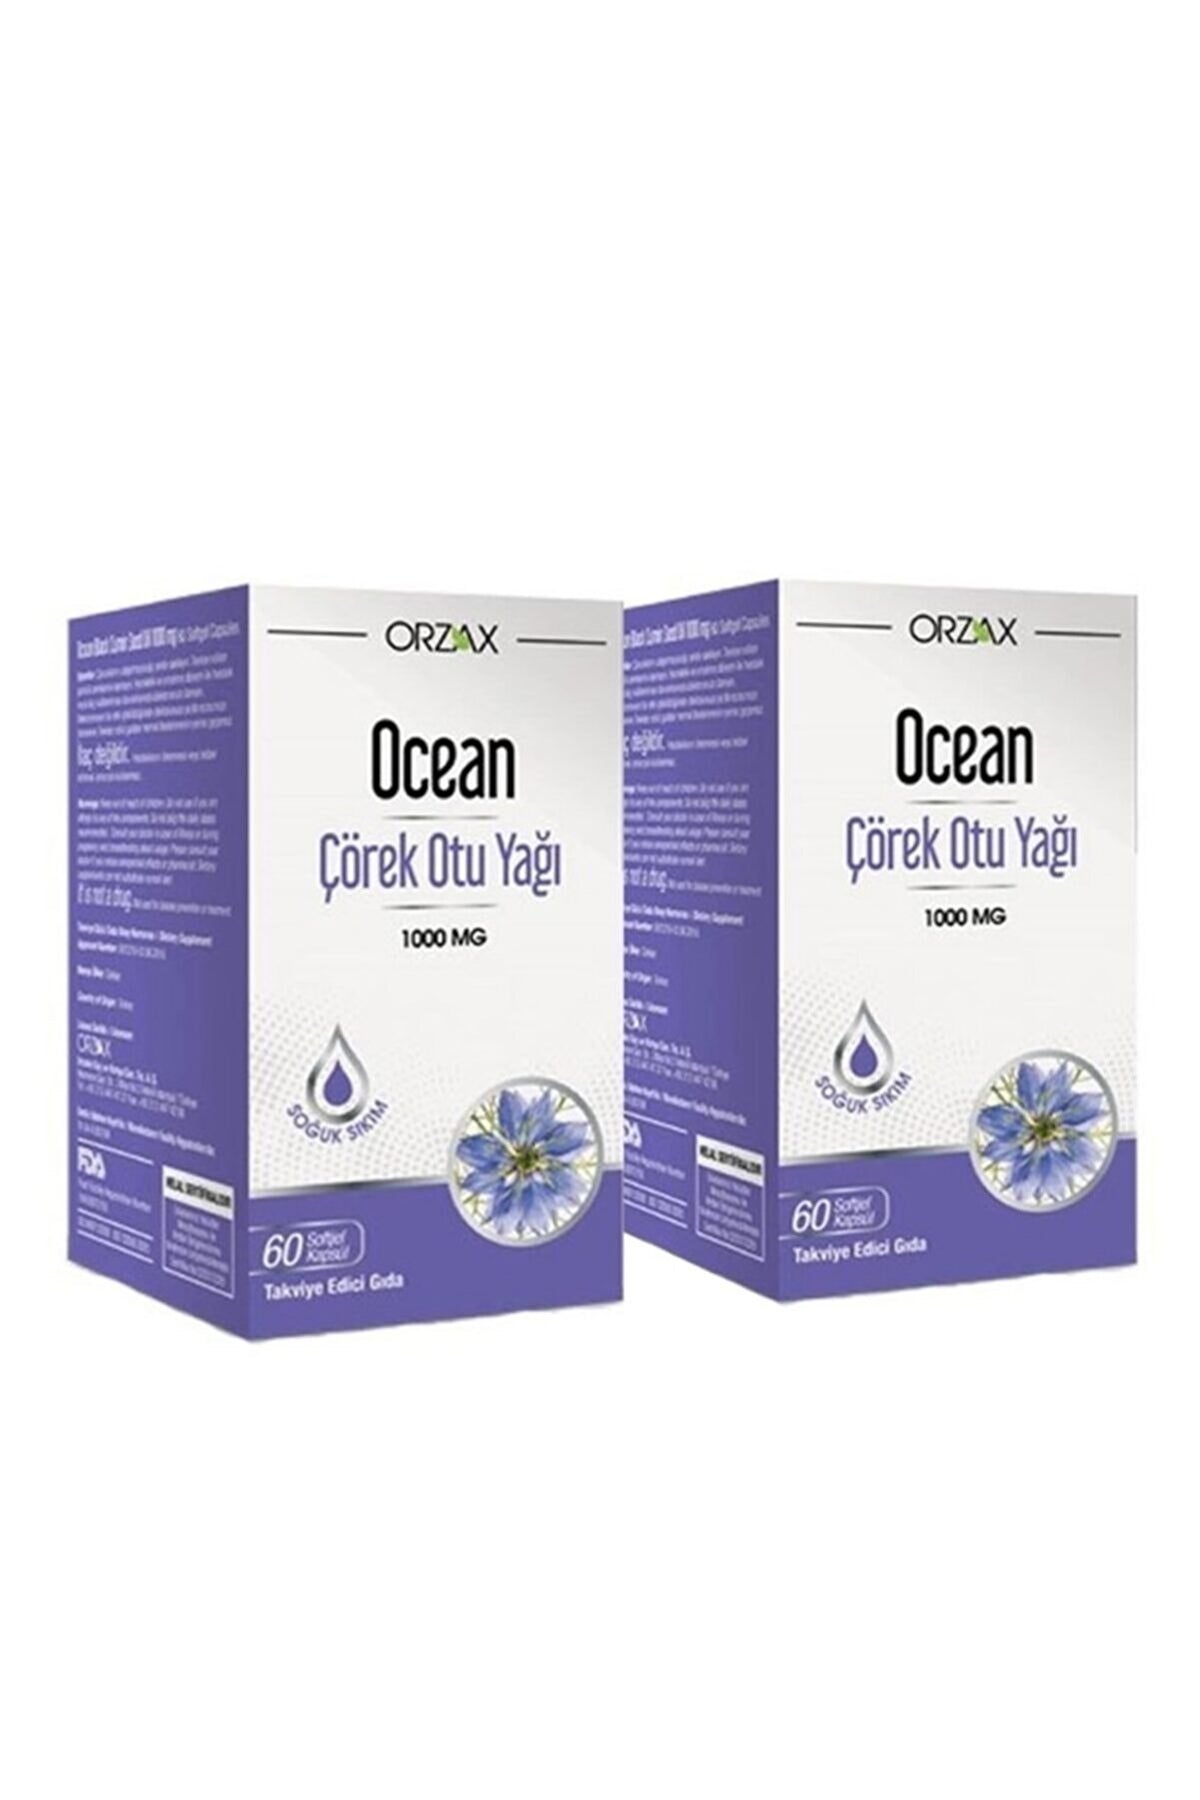 Ocean Çörek Otu Yağı 1000 mg 60 Kapsül 1 Alana 1 Bedava